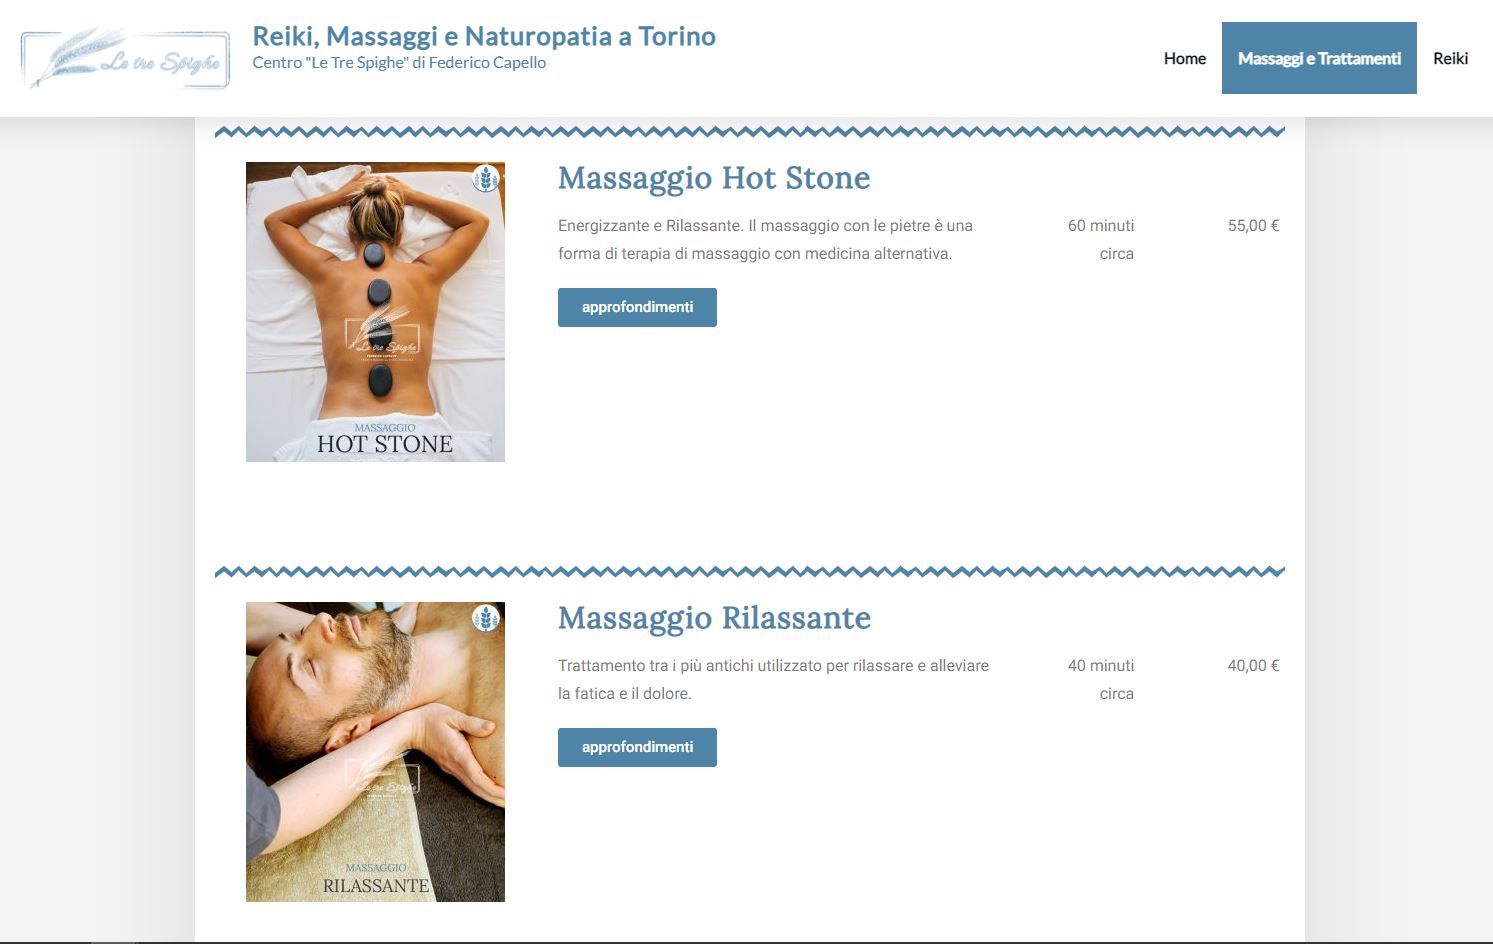 Massaggio hot stone e Massaggio Rilassante (Screenshot Pagina Massaggi e Trattamenti). 